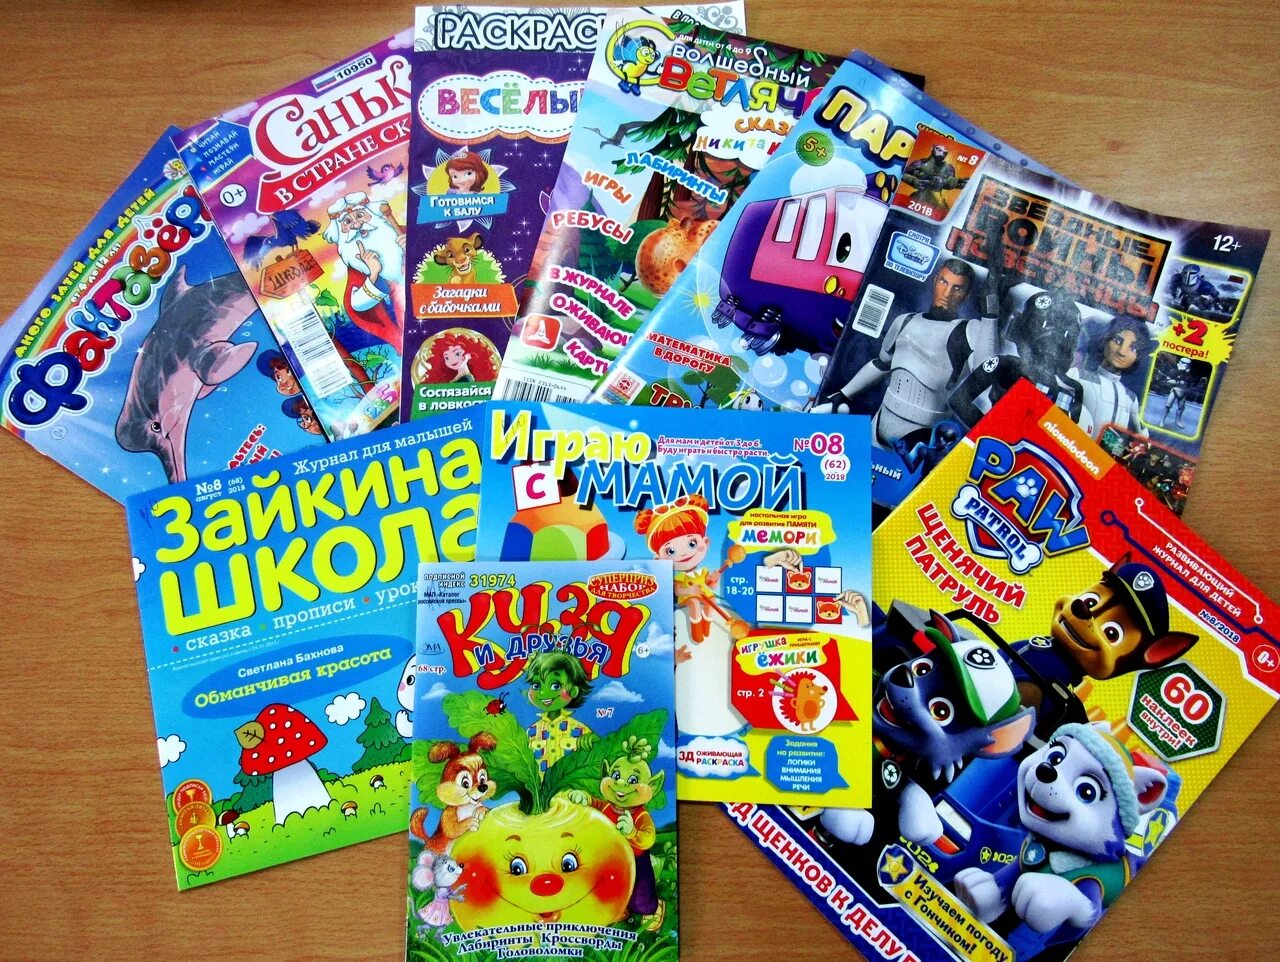 Детские журналы. Современные детские журналы. Детские журналы для детей. Периодические издания для детей. Детские журналы подписка